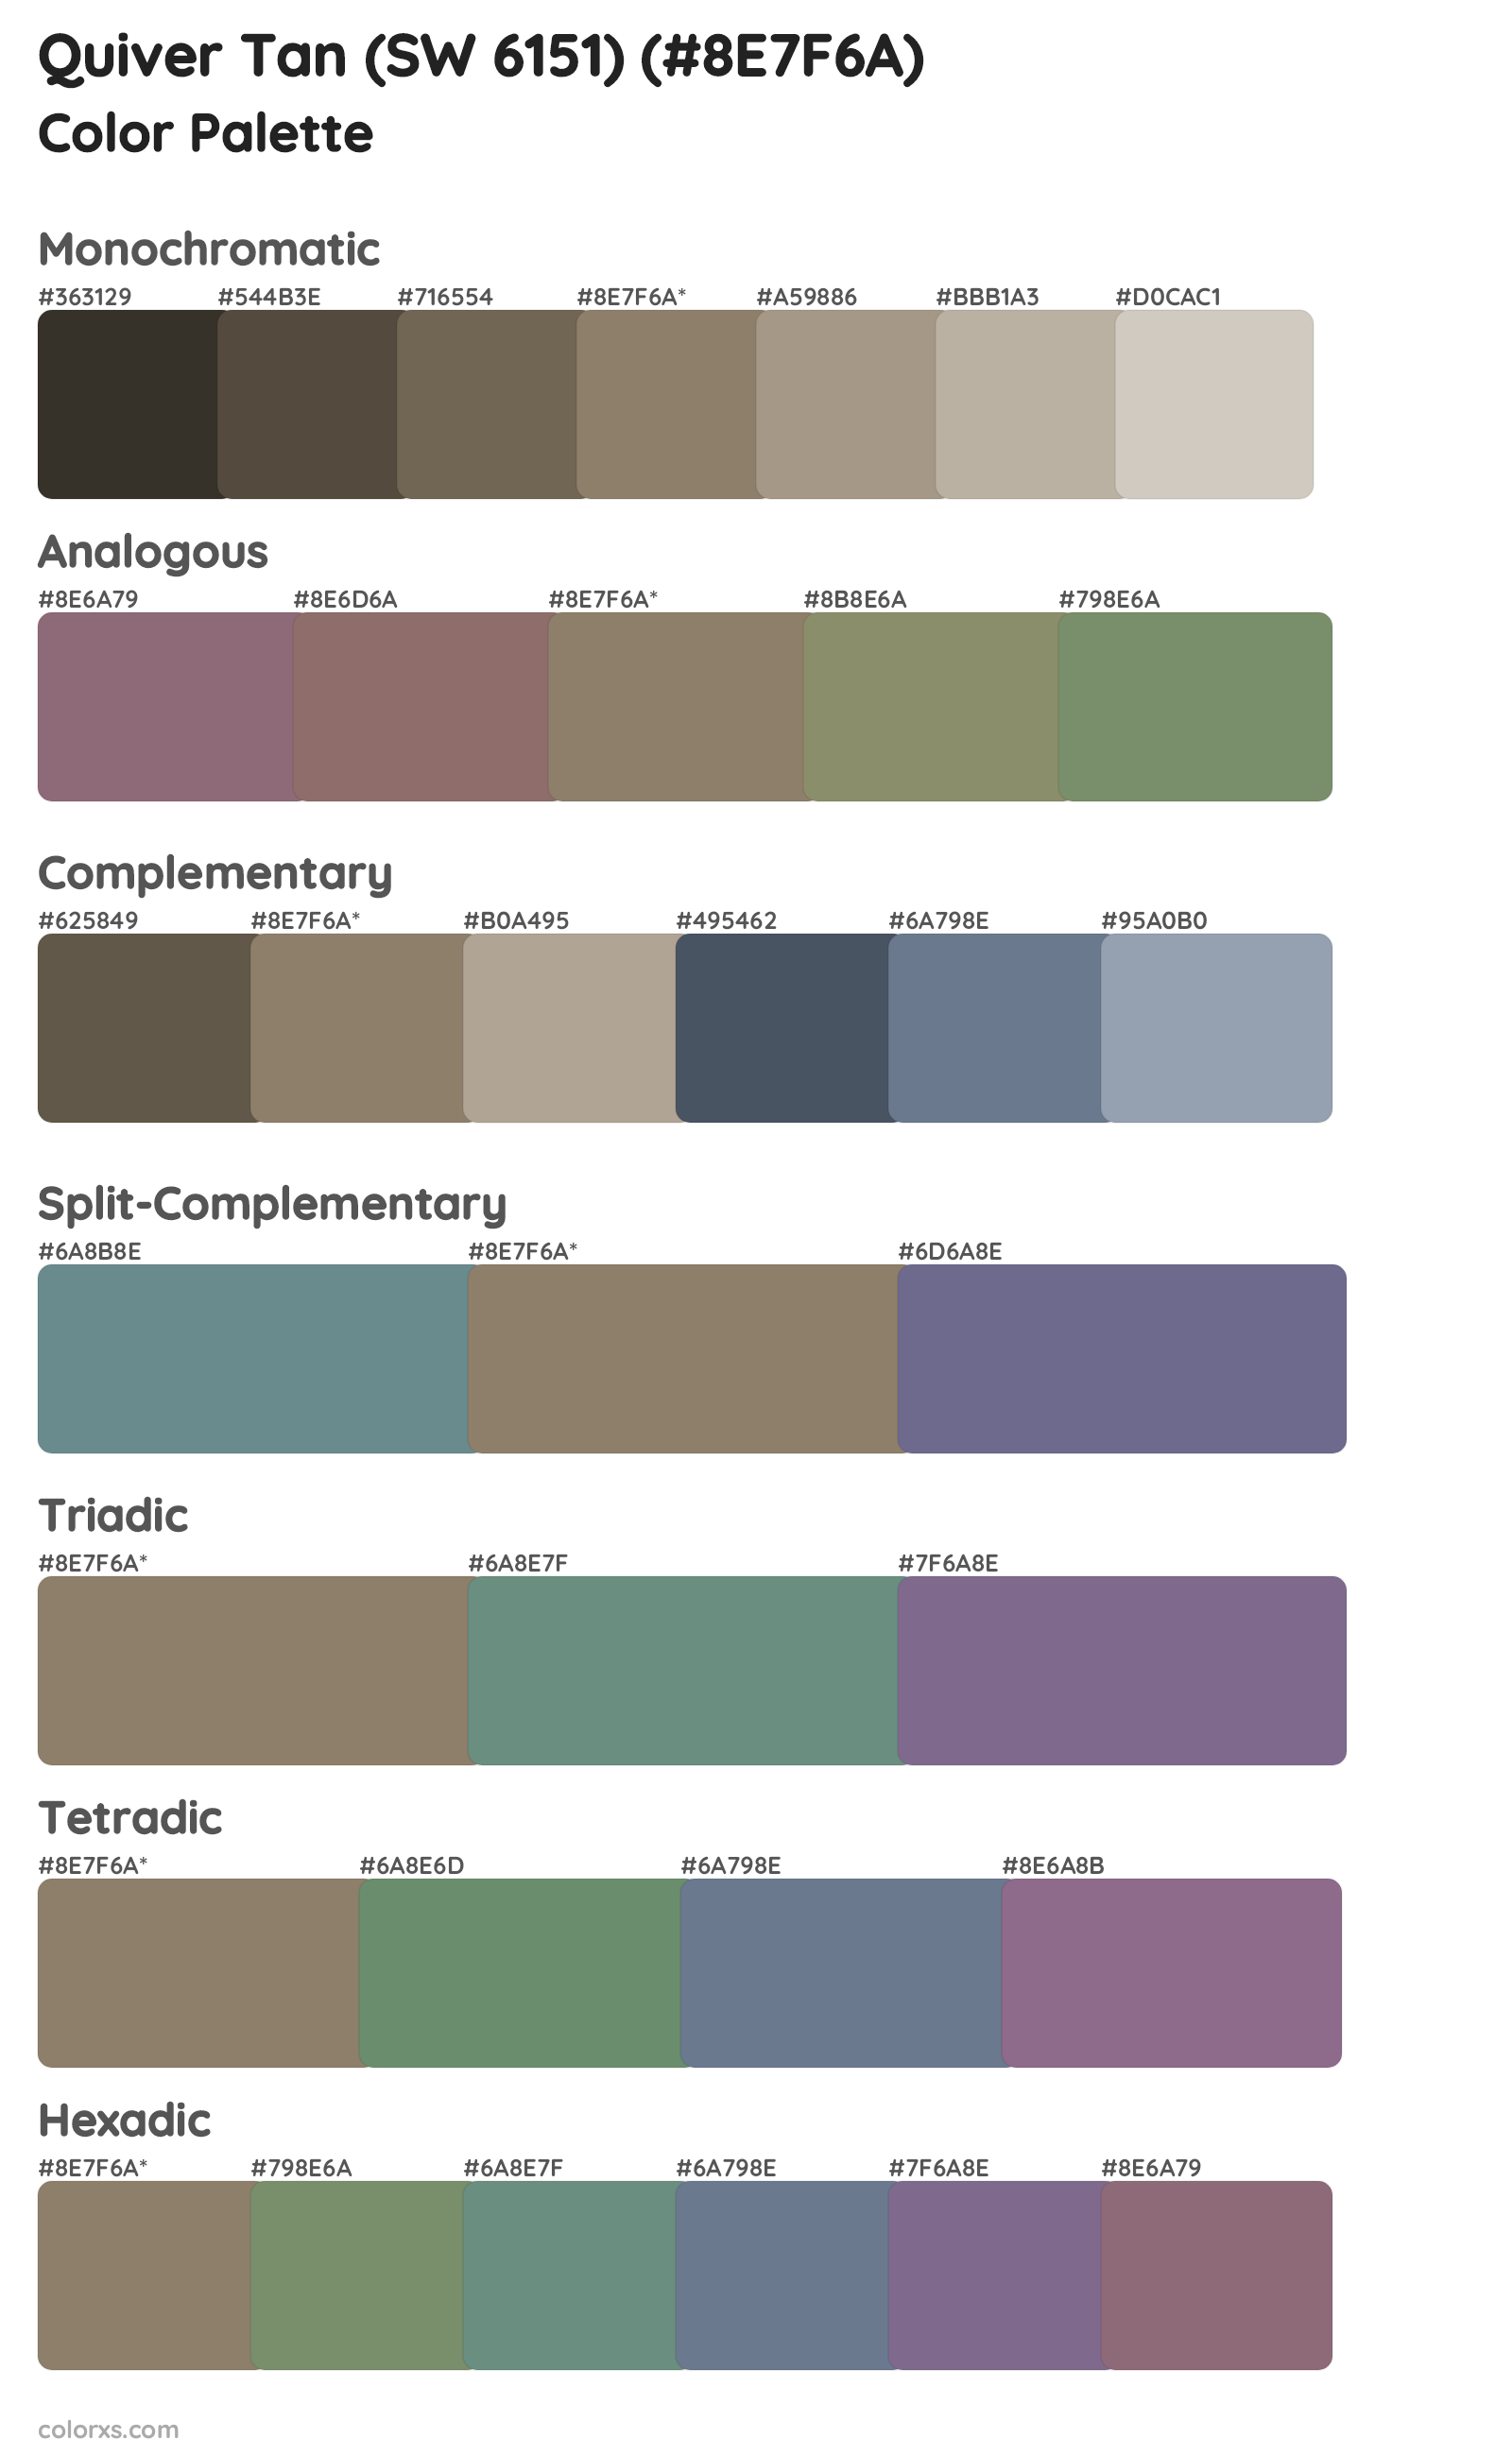 Quiver Tan (SW 6151) Color Scheme Palettes